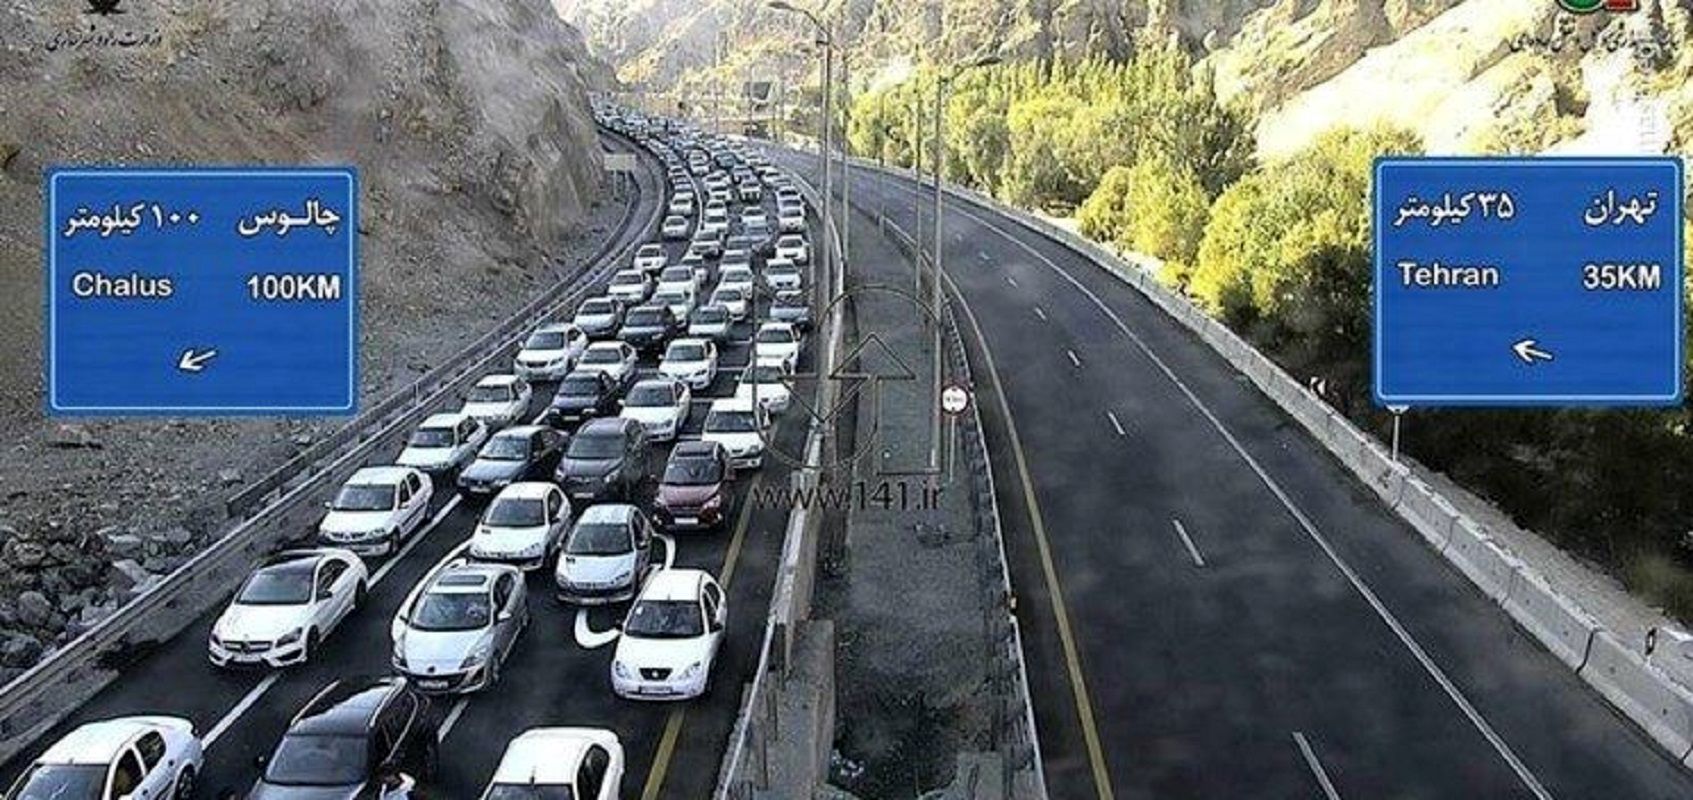 ترافیک در آزادراه تهران-شمال سنگین شد/ اعمال محدودیت ترافیکی جدید